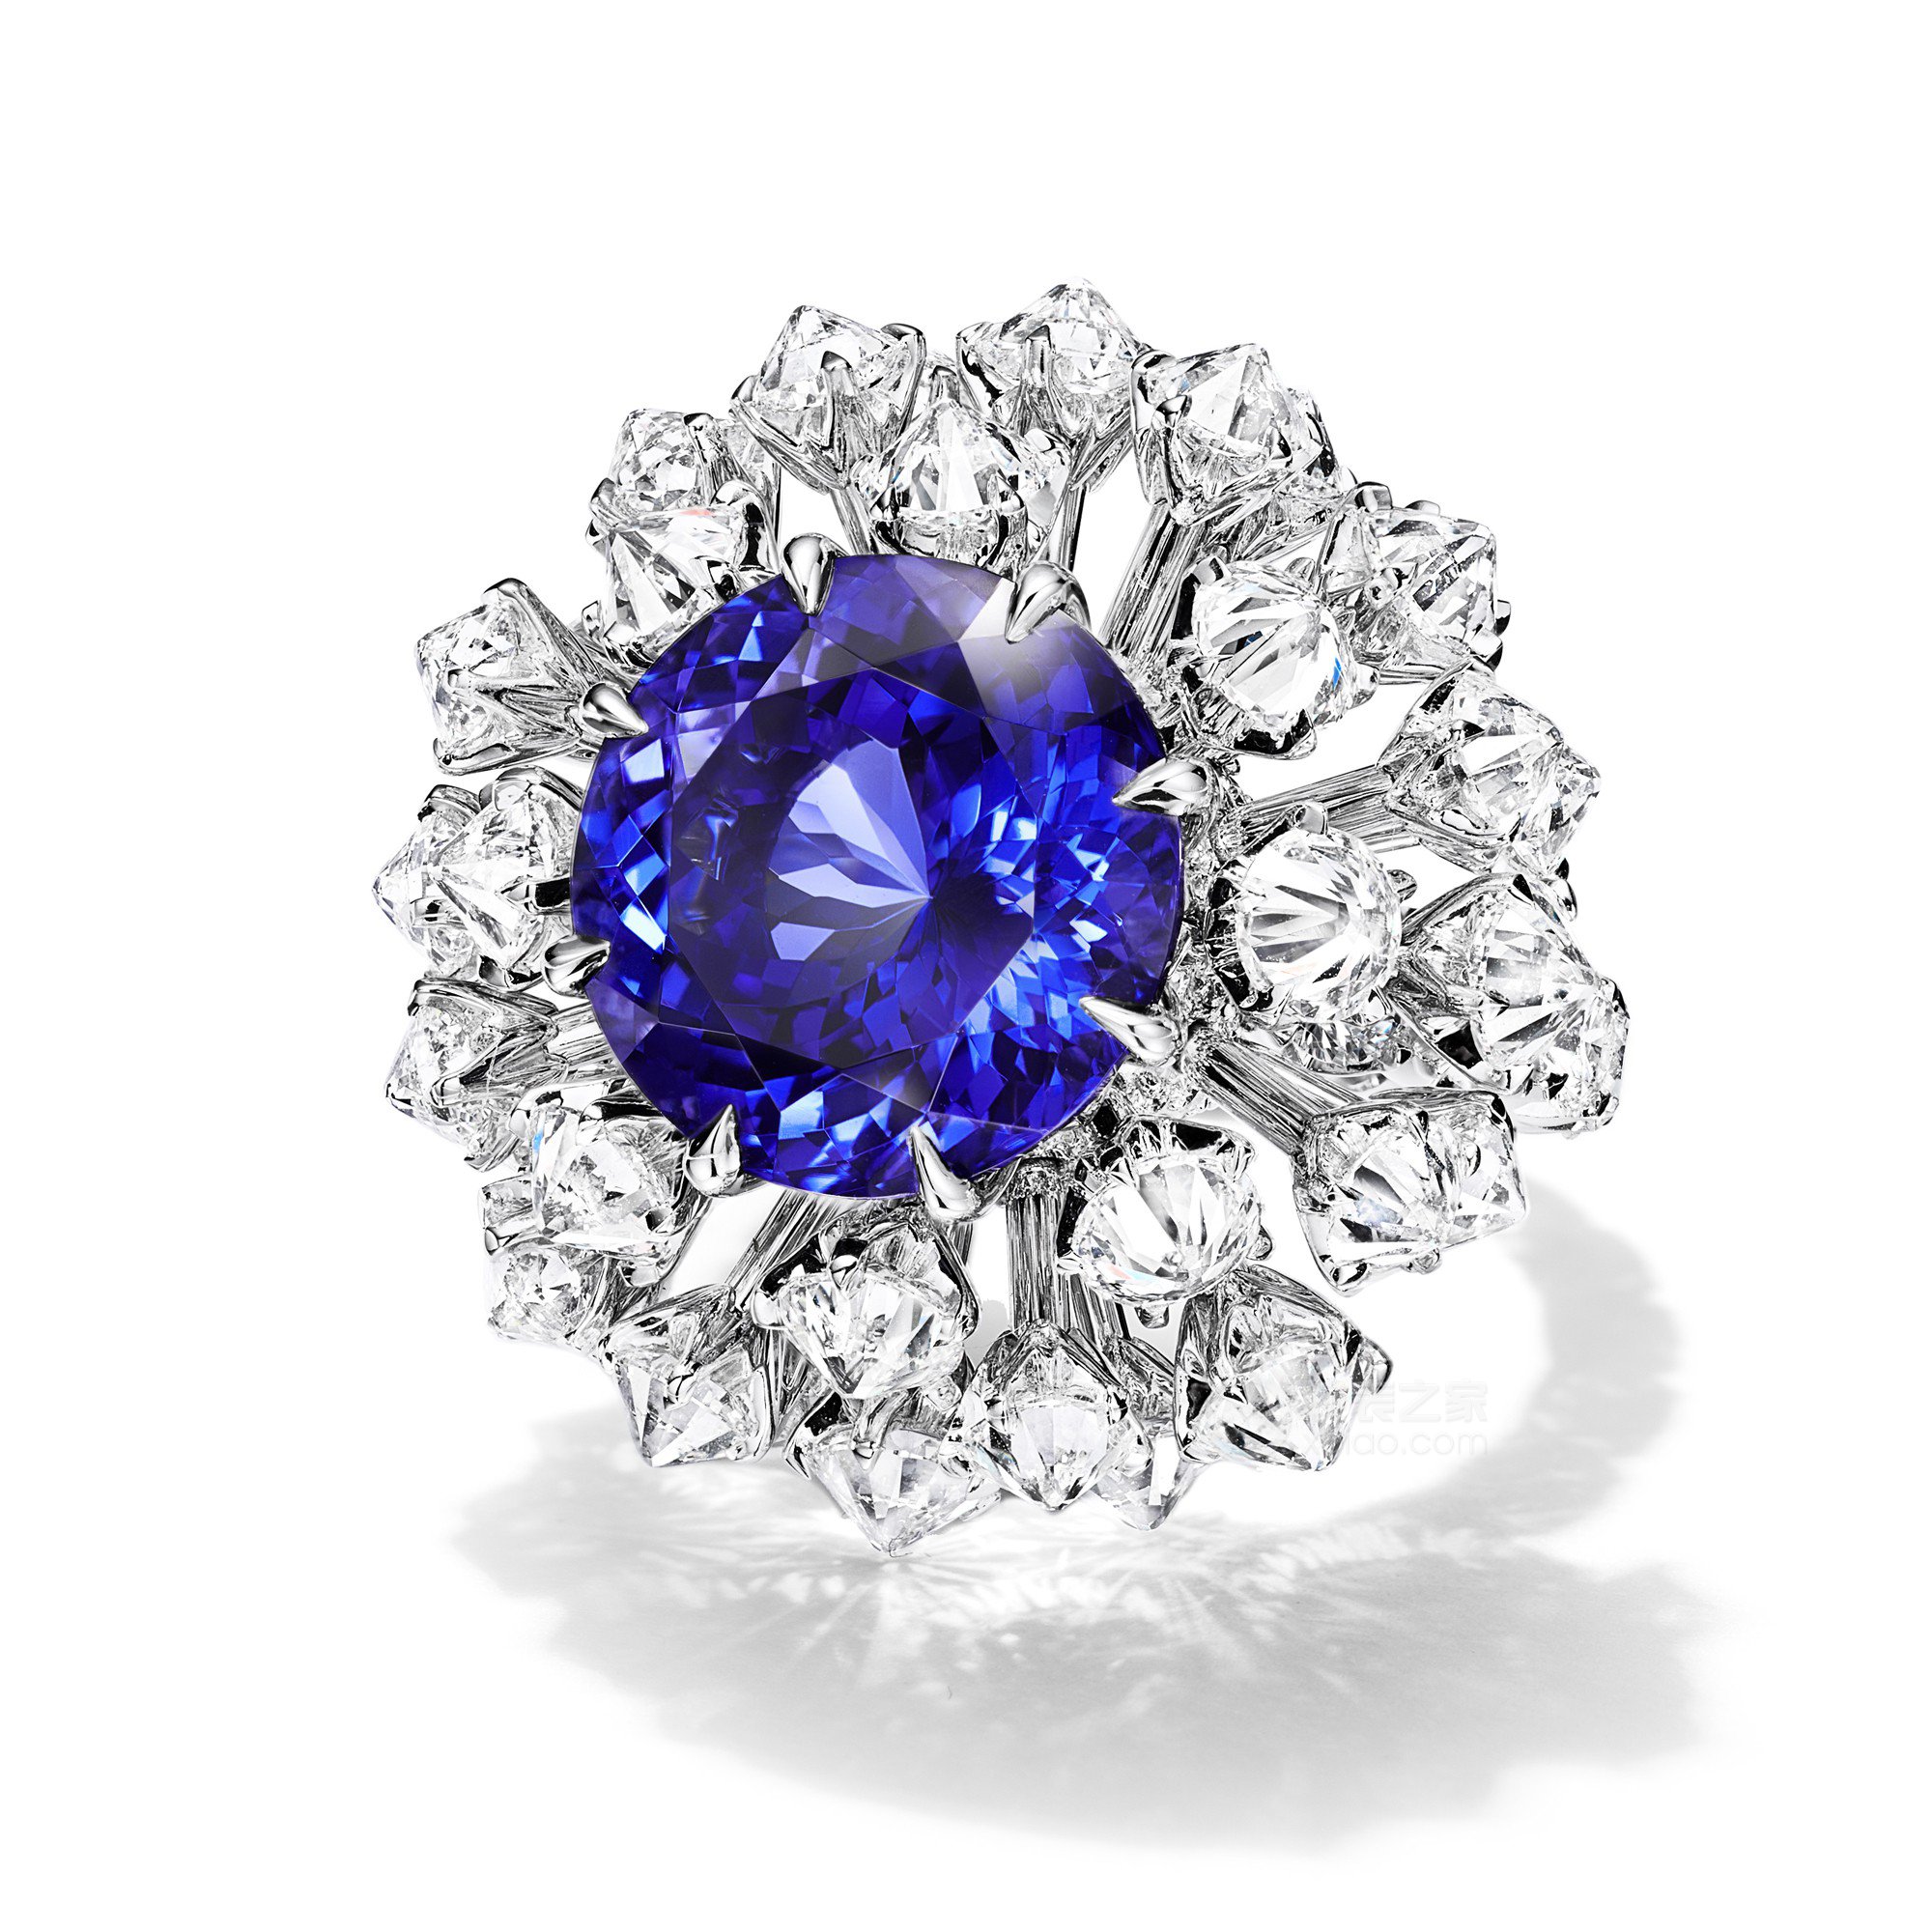 蒂芙尼BLUE BOOK高级珠宝18K白金镶嵌一颗重逾11克拉的坦桑石及钻石戒指戒指